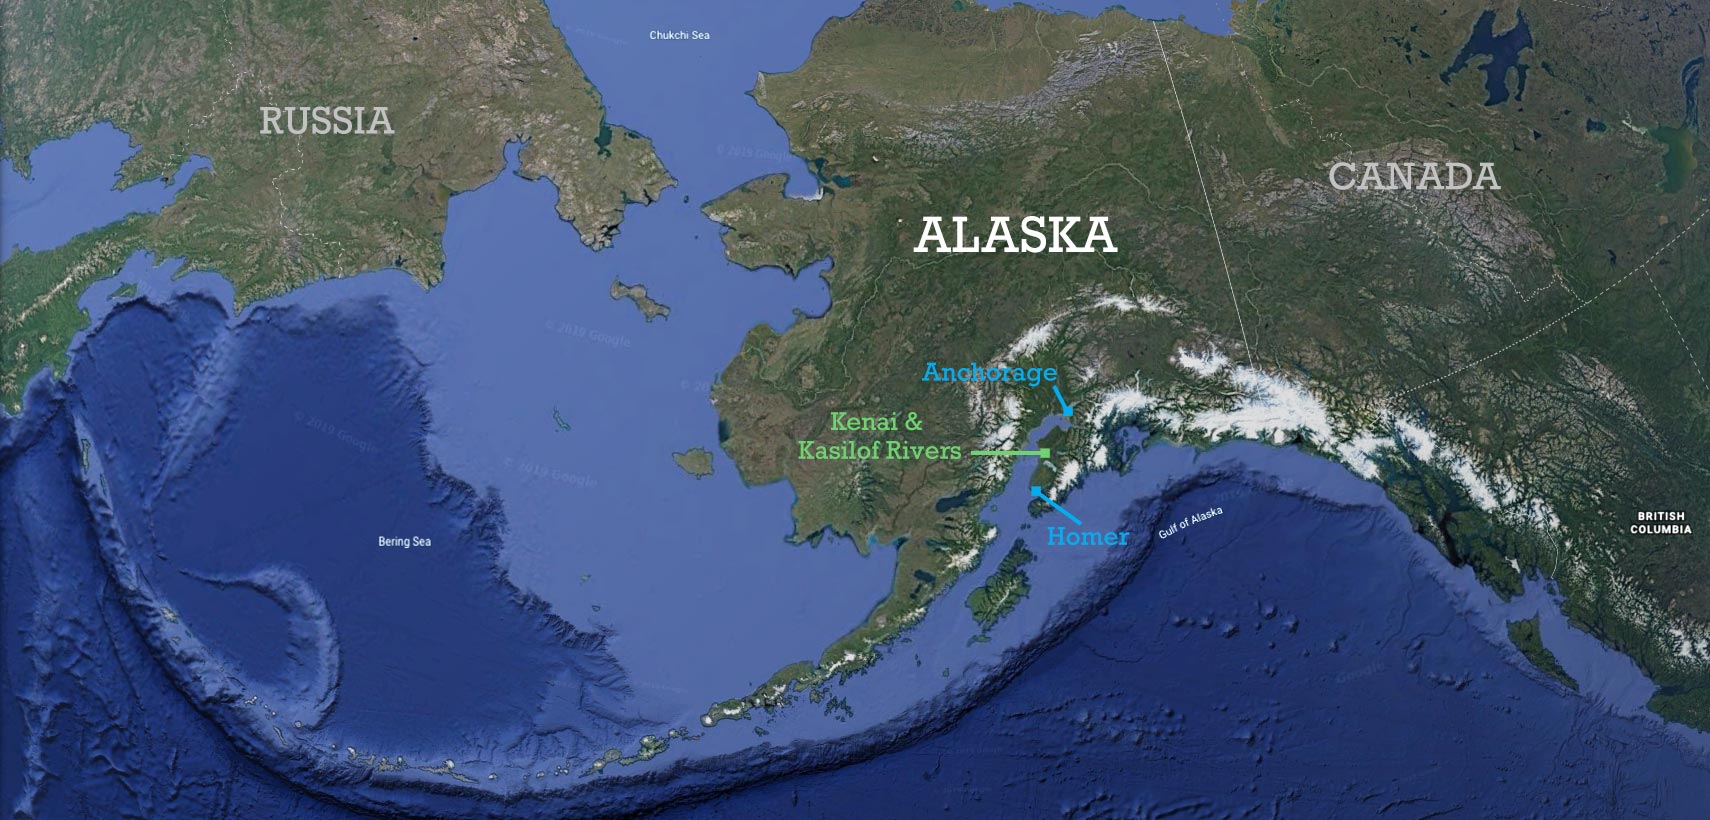 Крайняя западная точка тихого океана. Аляска Берингов пролив. Карта Берингова пролива и Аляски. Перешеек в Беринговом проливе. Острова в Беринговом проливе.